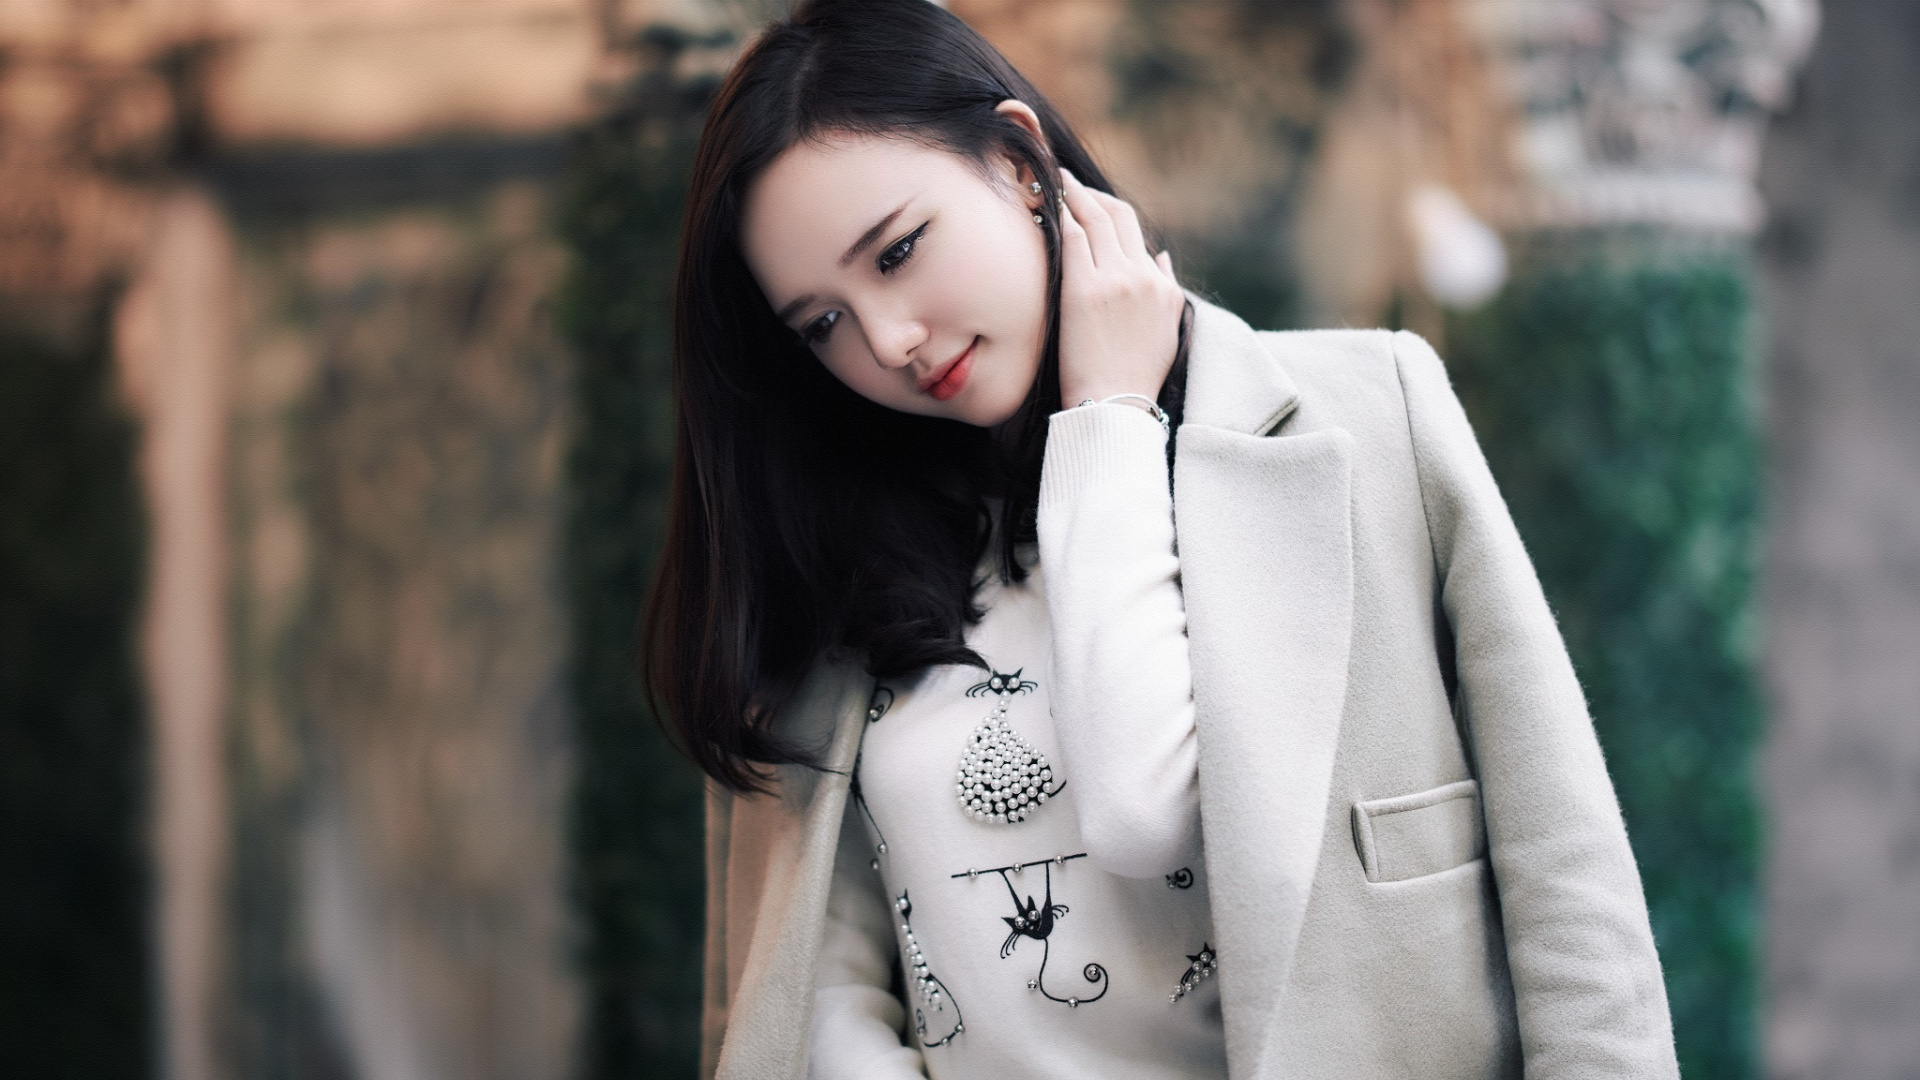 Cute And Beautiful, Girl Model, Asian, Wallpaper - Beautiful And Cute Girl - HD Wallpaper 